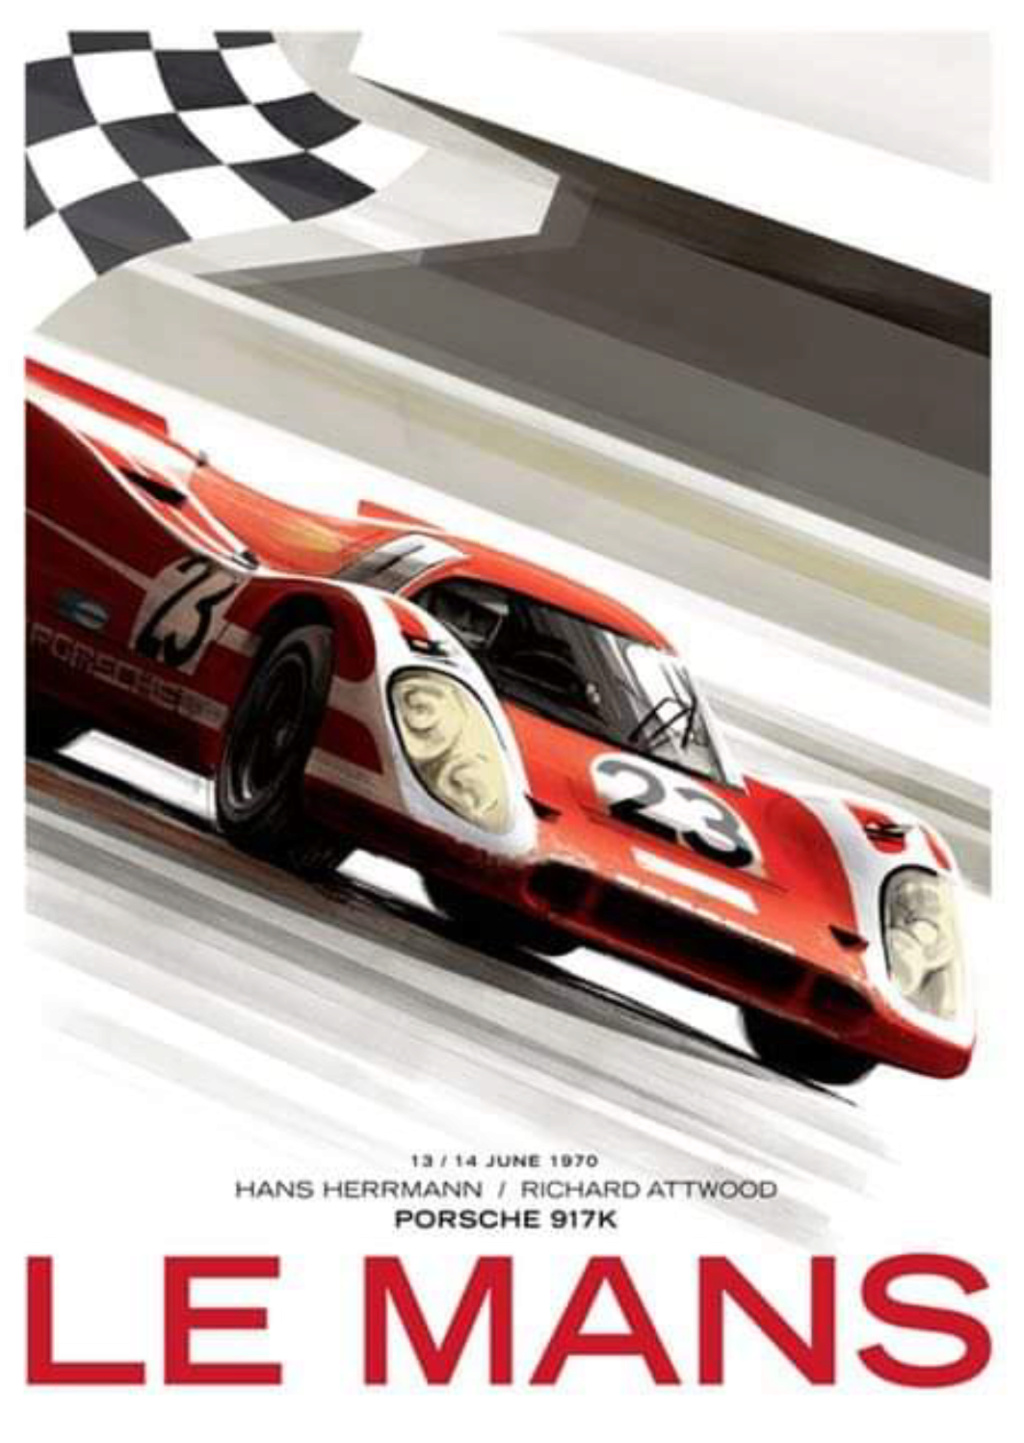 Affiches Porsche dans la course Automobile - Page 5 Scree118